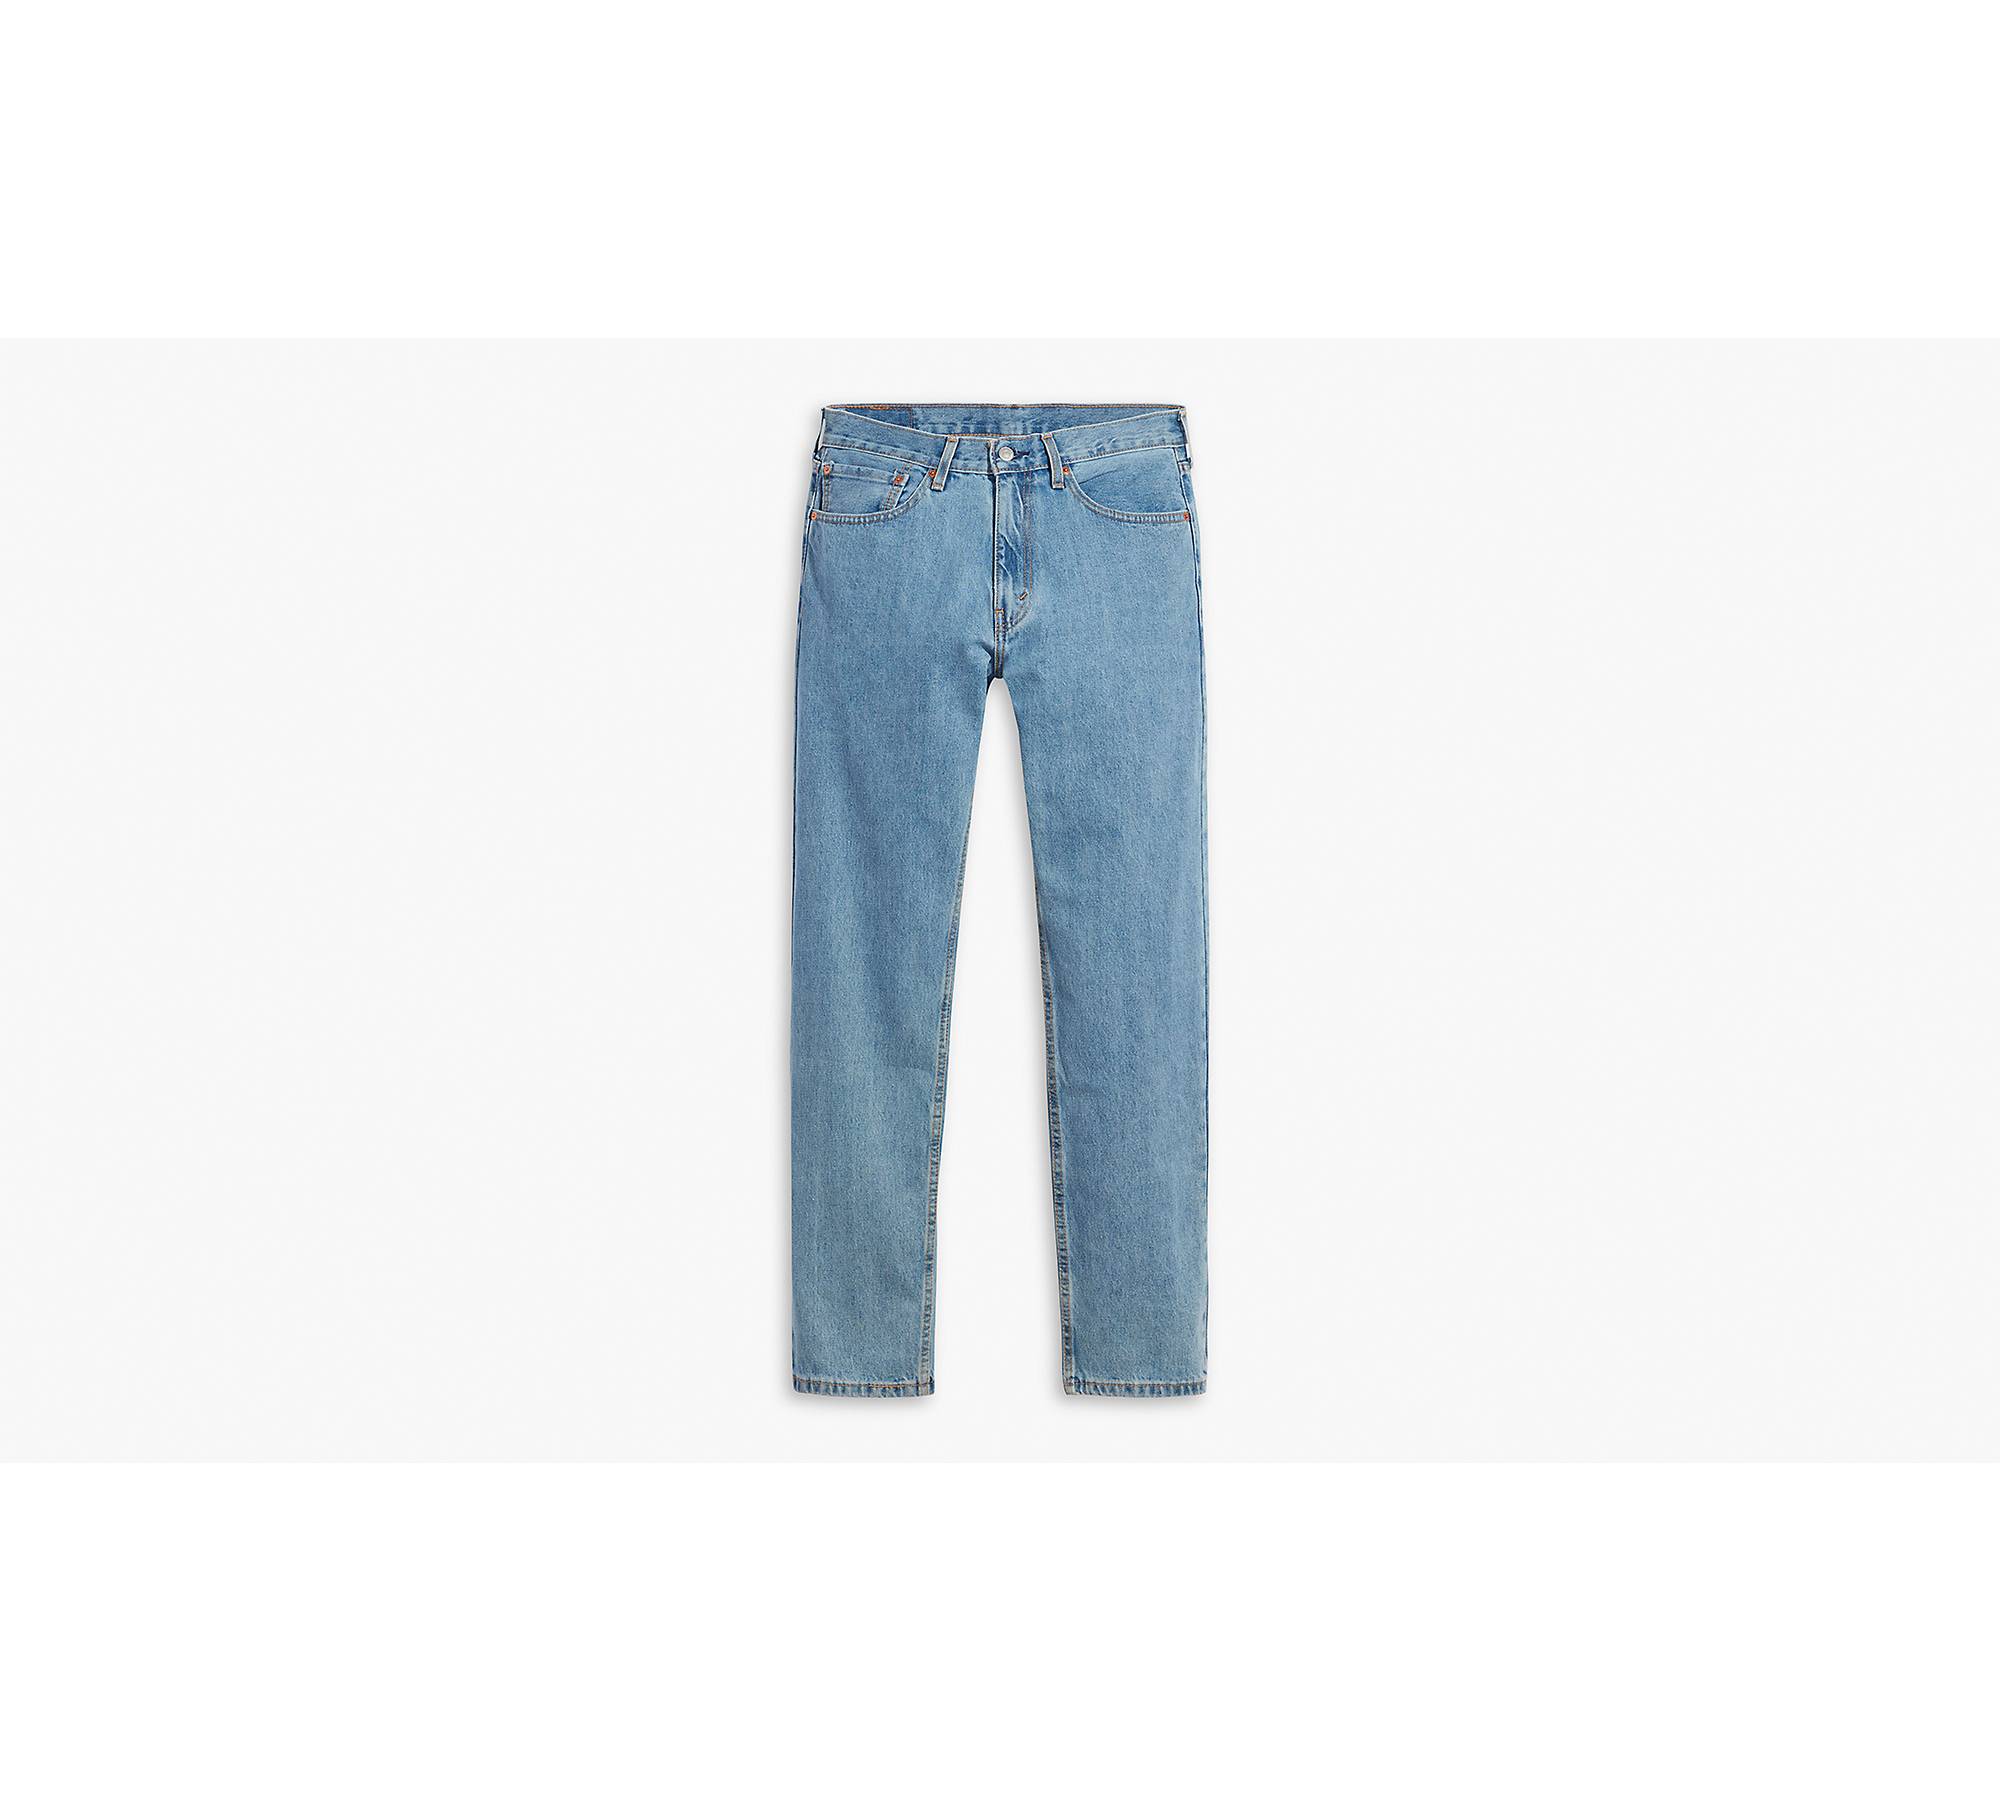 Levi's Men's 505 Regular Fit Jean, Medium Stonewash, 34x30